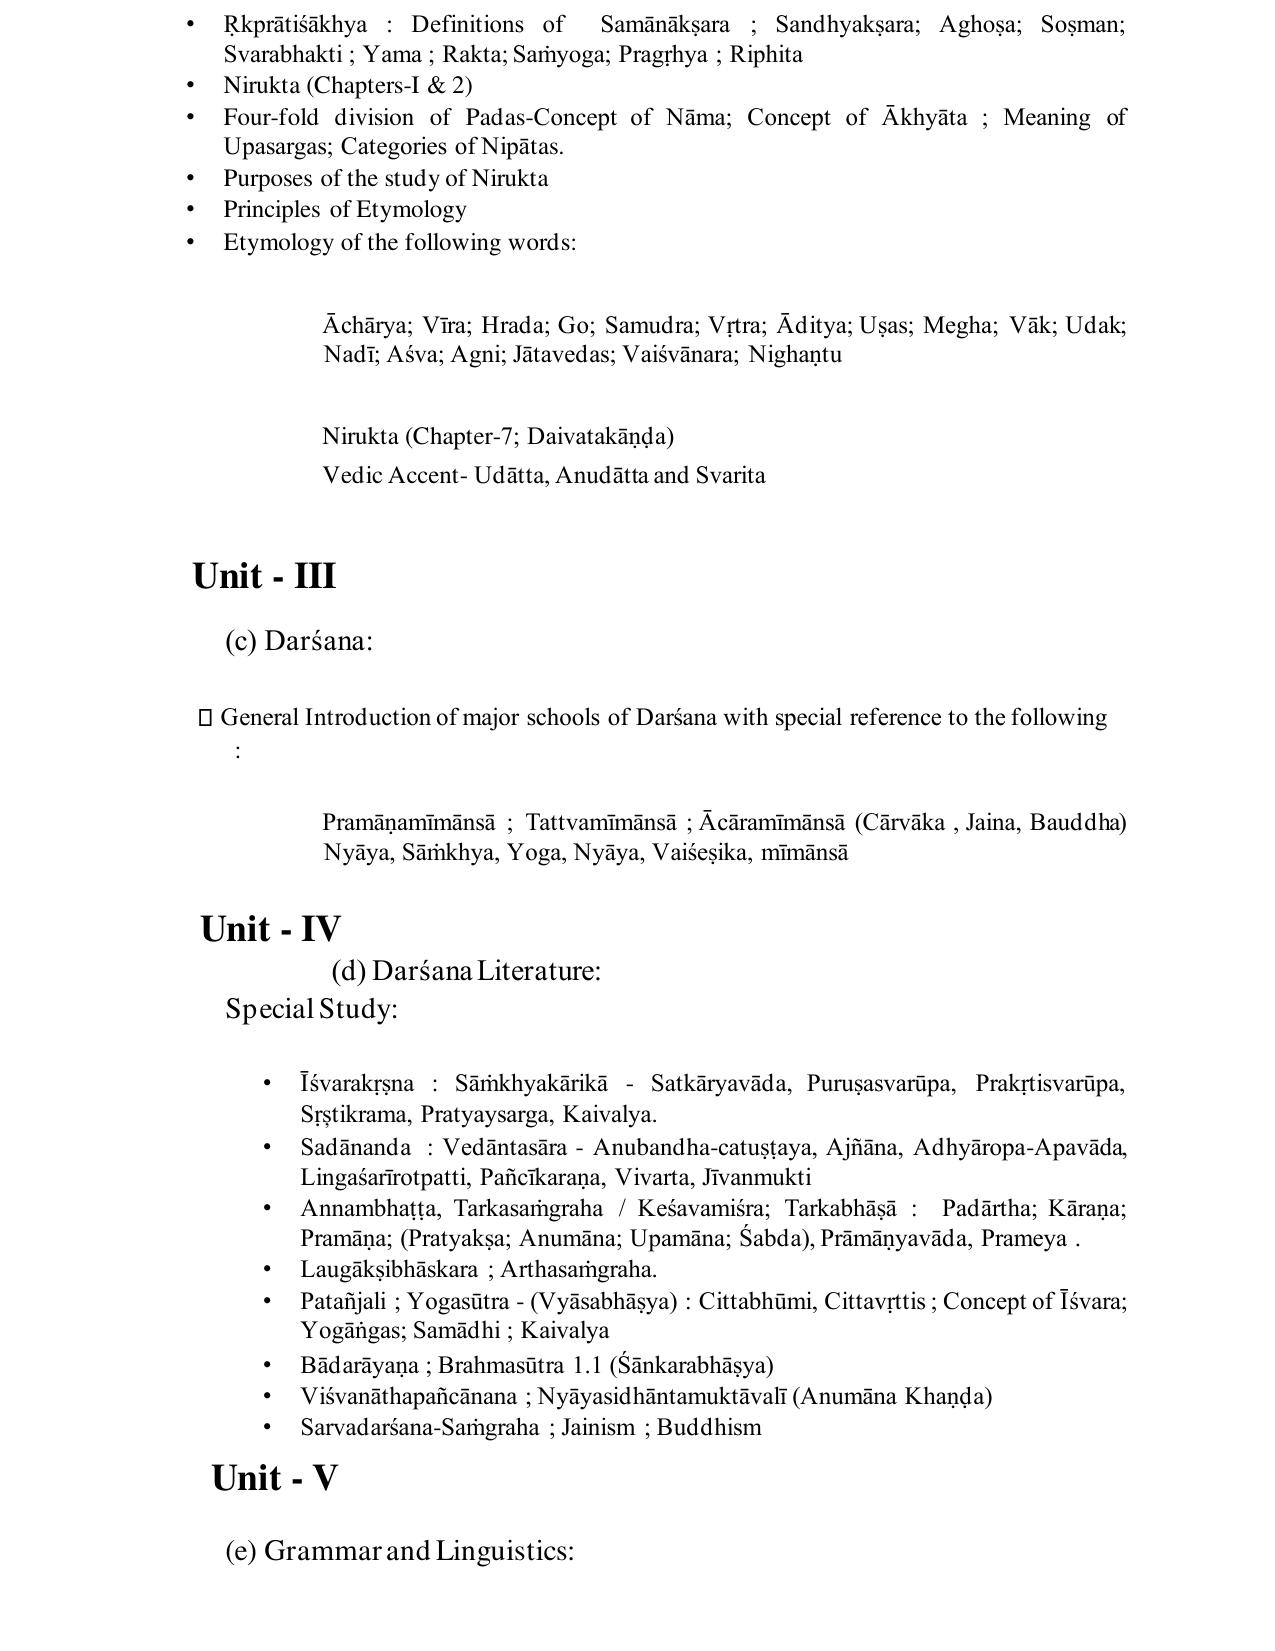 TNSET Syllabus - Sanskrit - Page 2